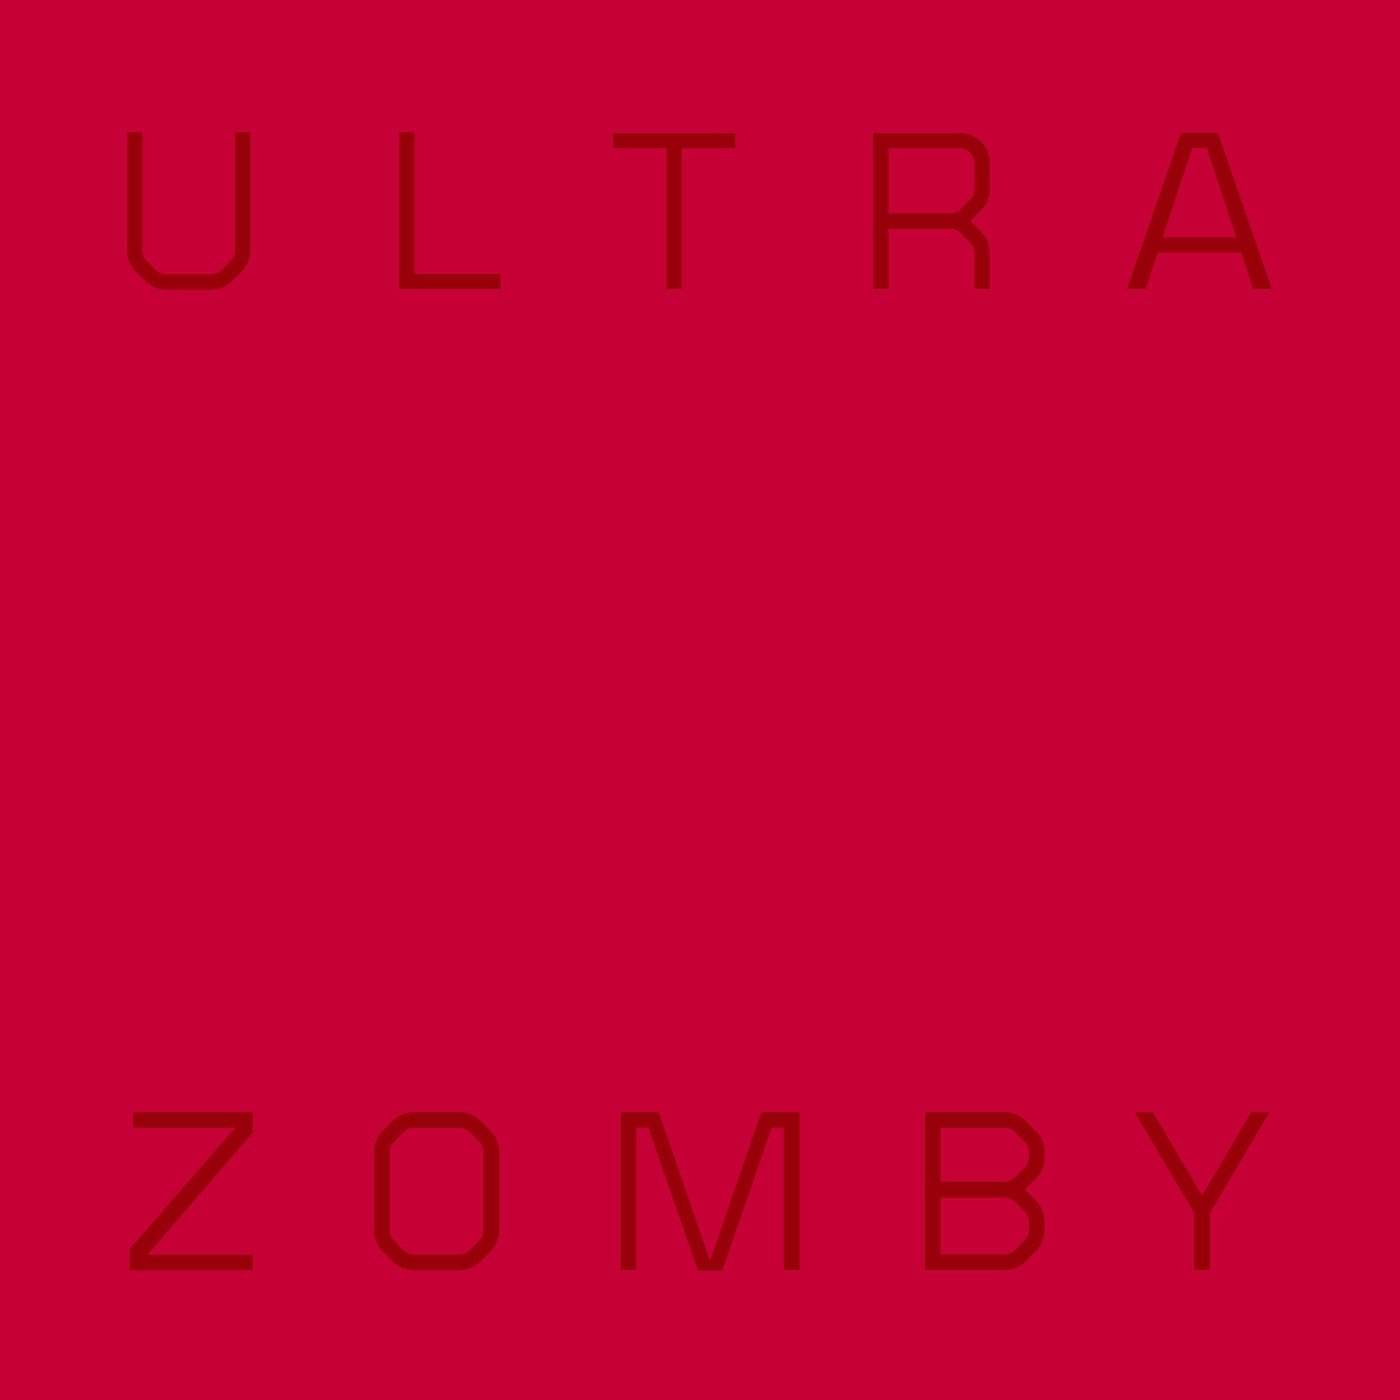 Zomby 'Ultra' Vinyl Record